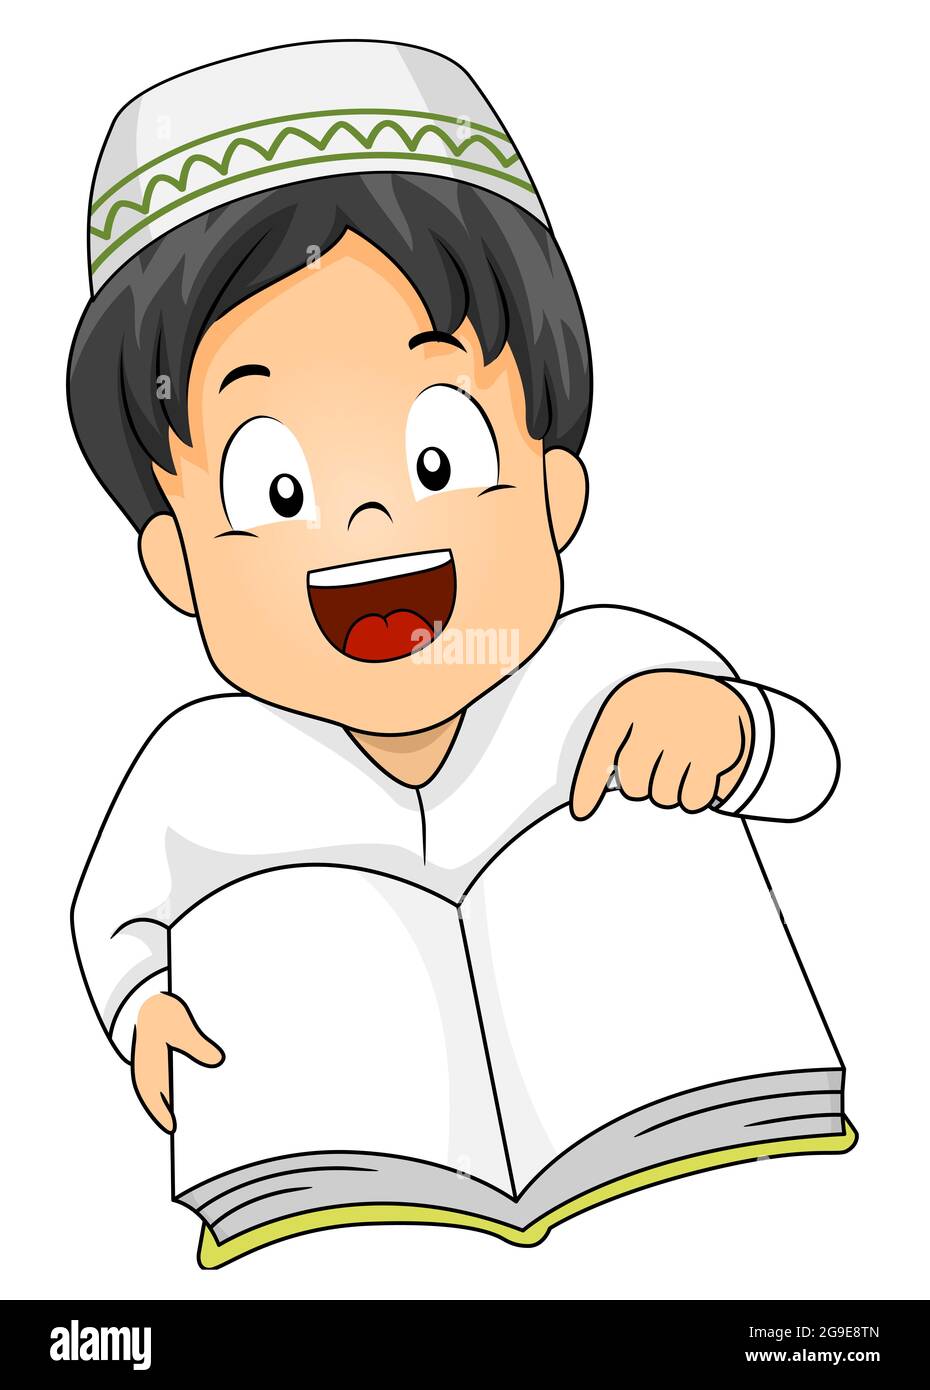 Ilustración de un niño musulmán apuntando a un libro abierto en blanco Foto de stock